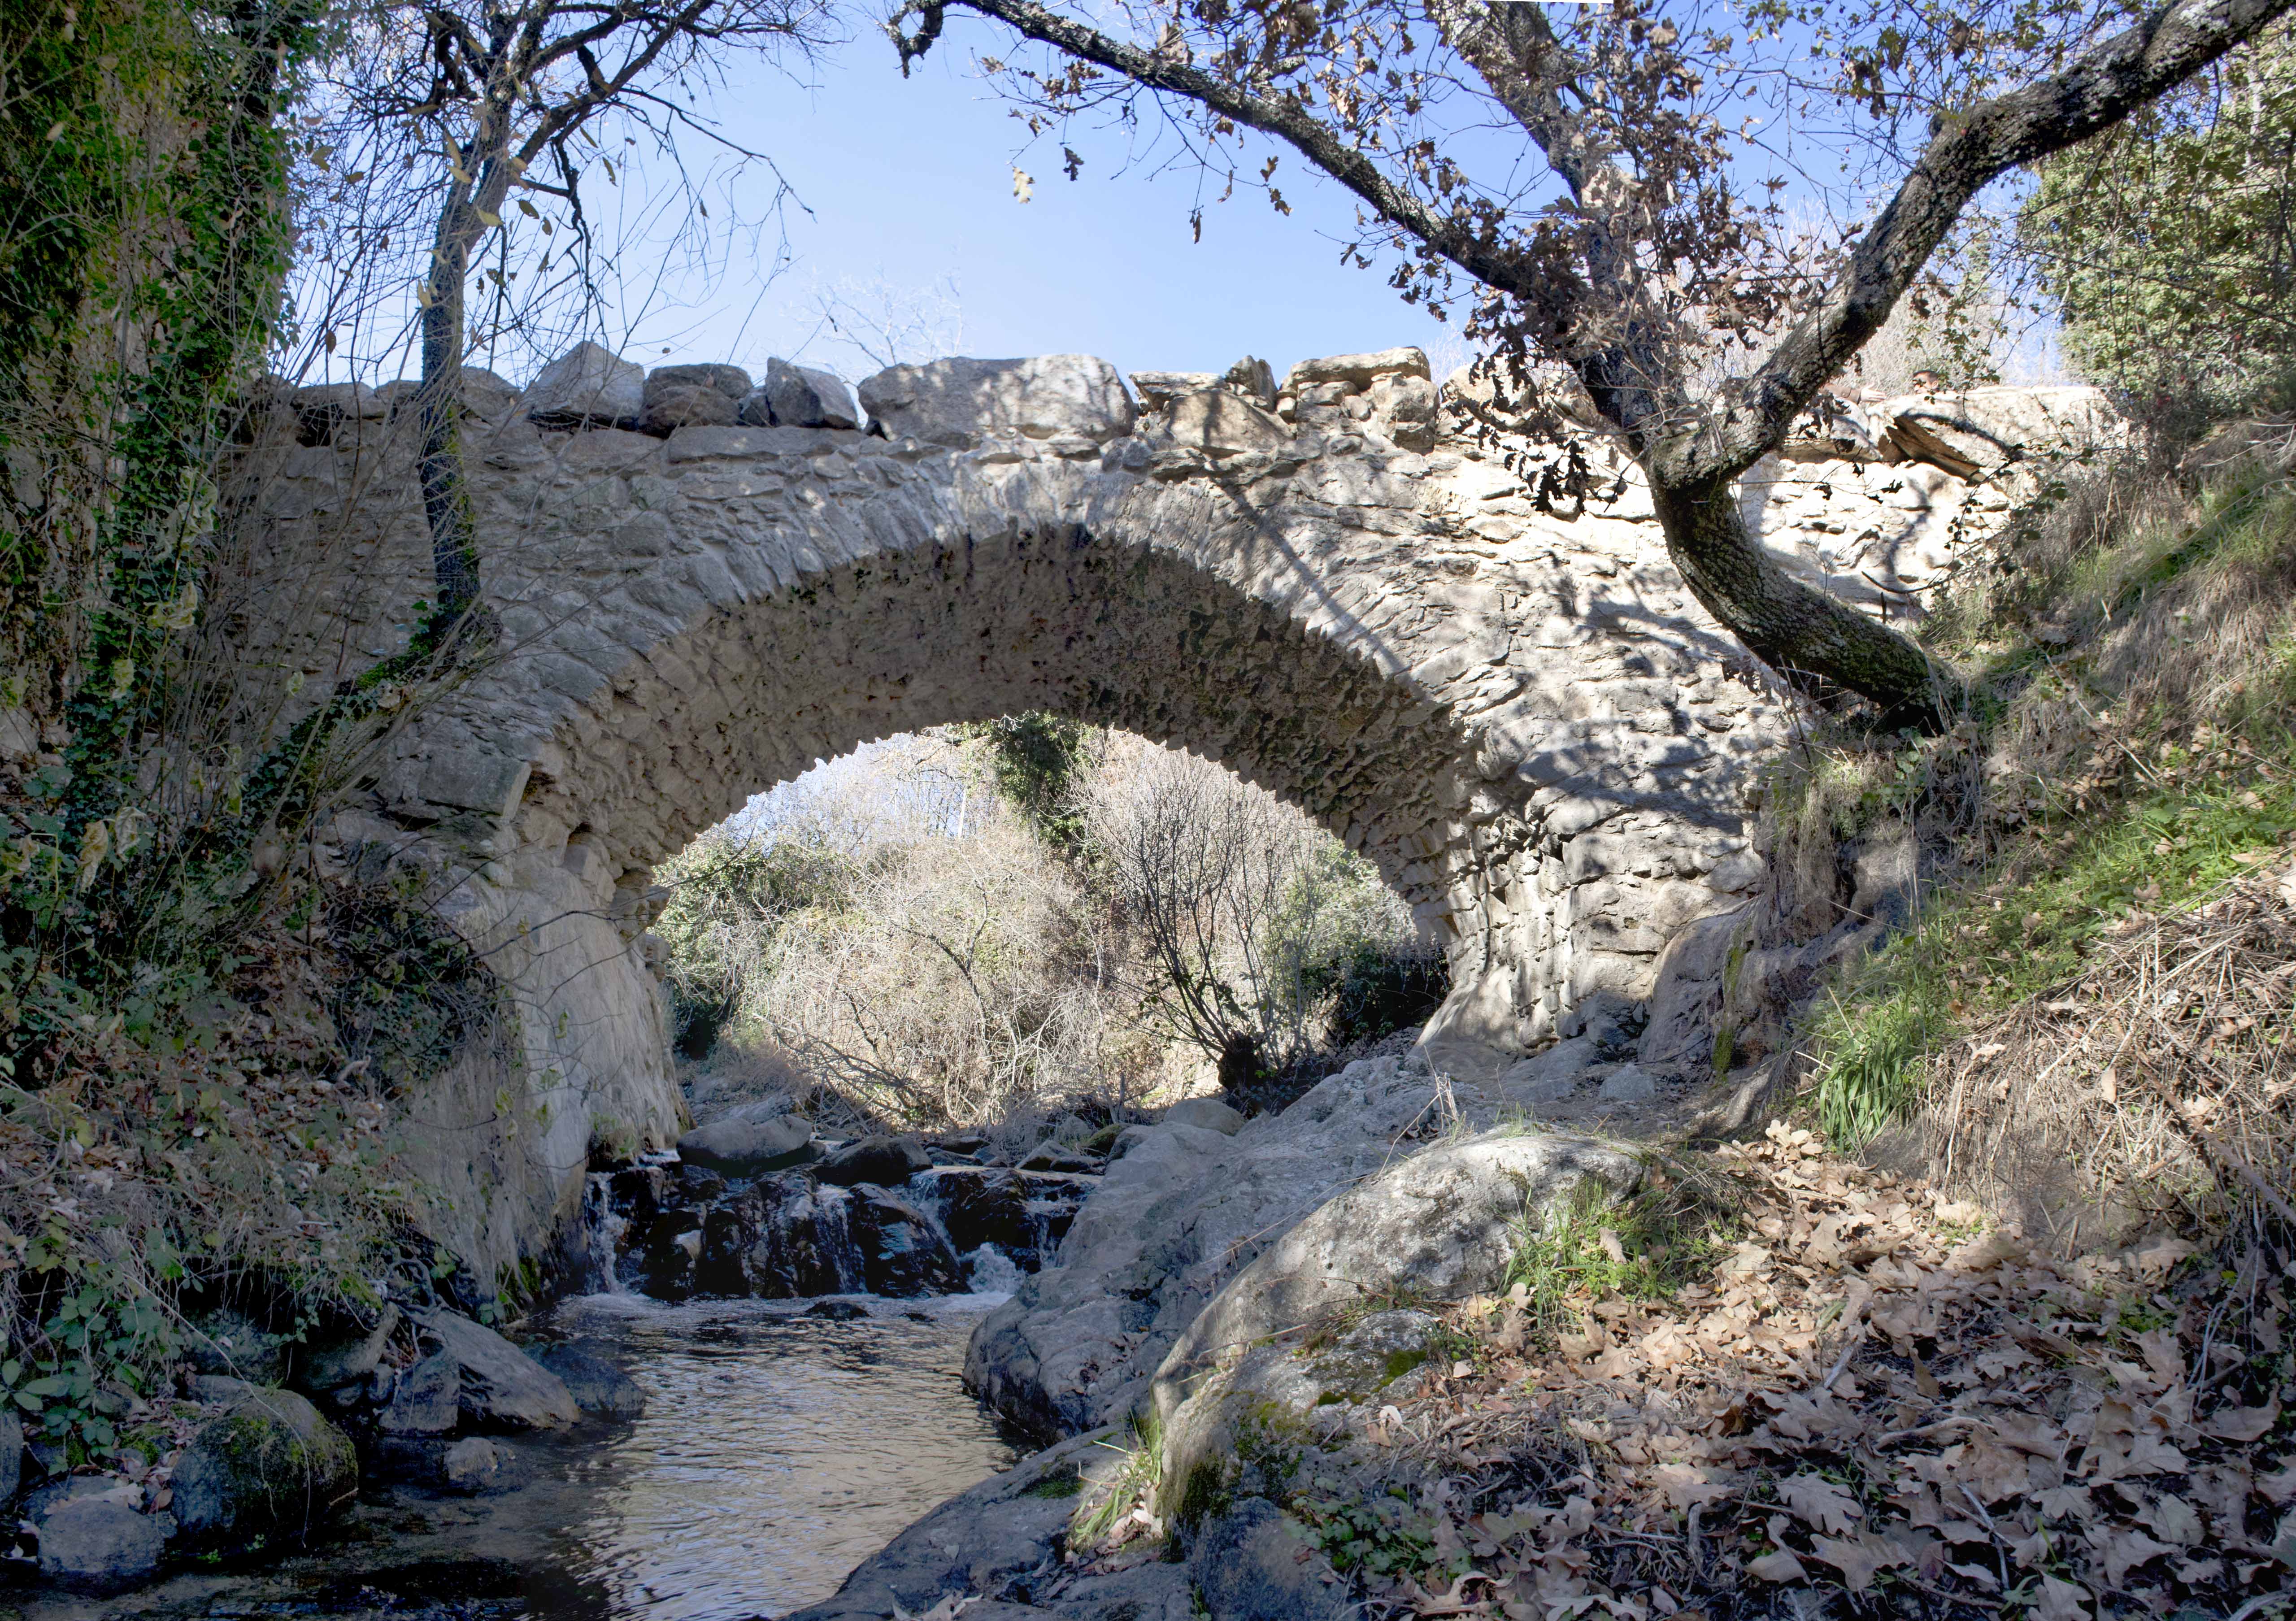 Plan de actuación sobre puentes históricos. Puente de Salustiano, MIraflores de la Sierra